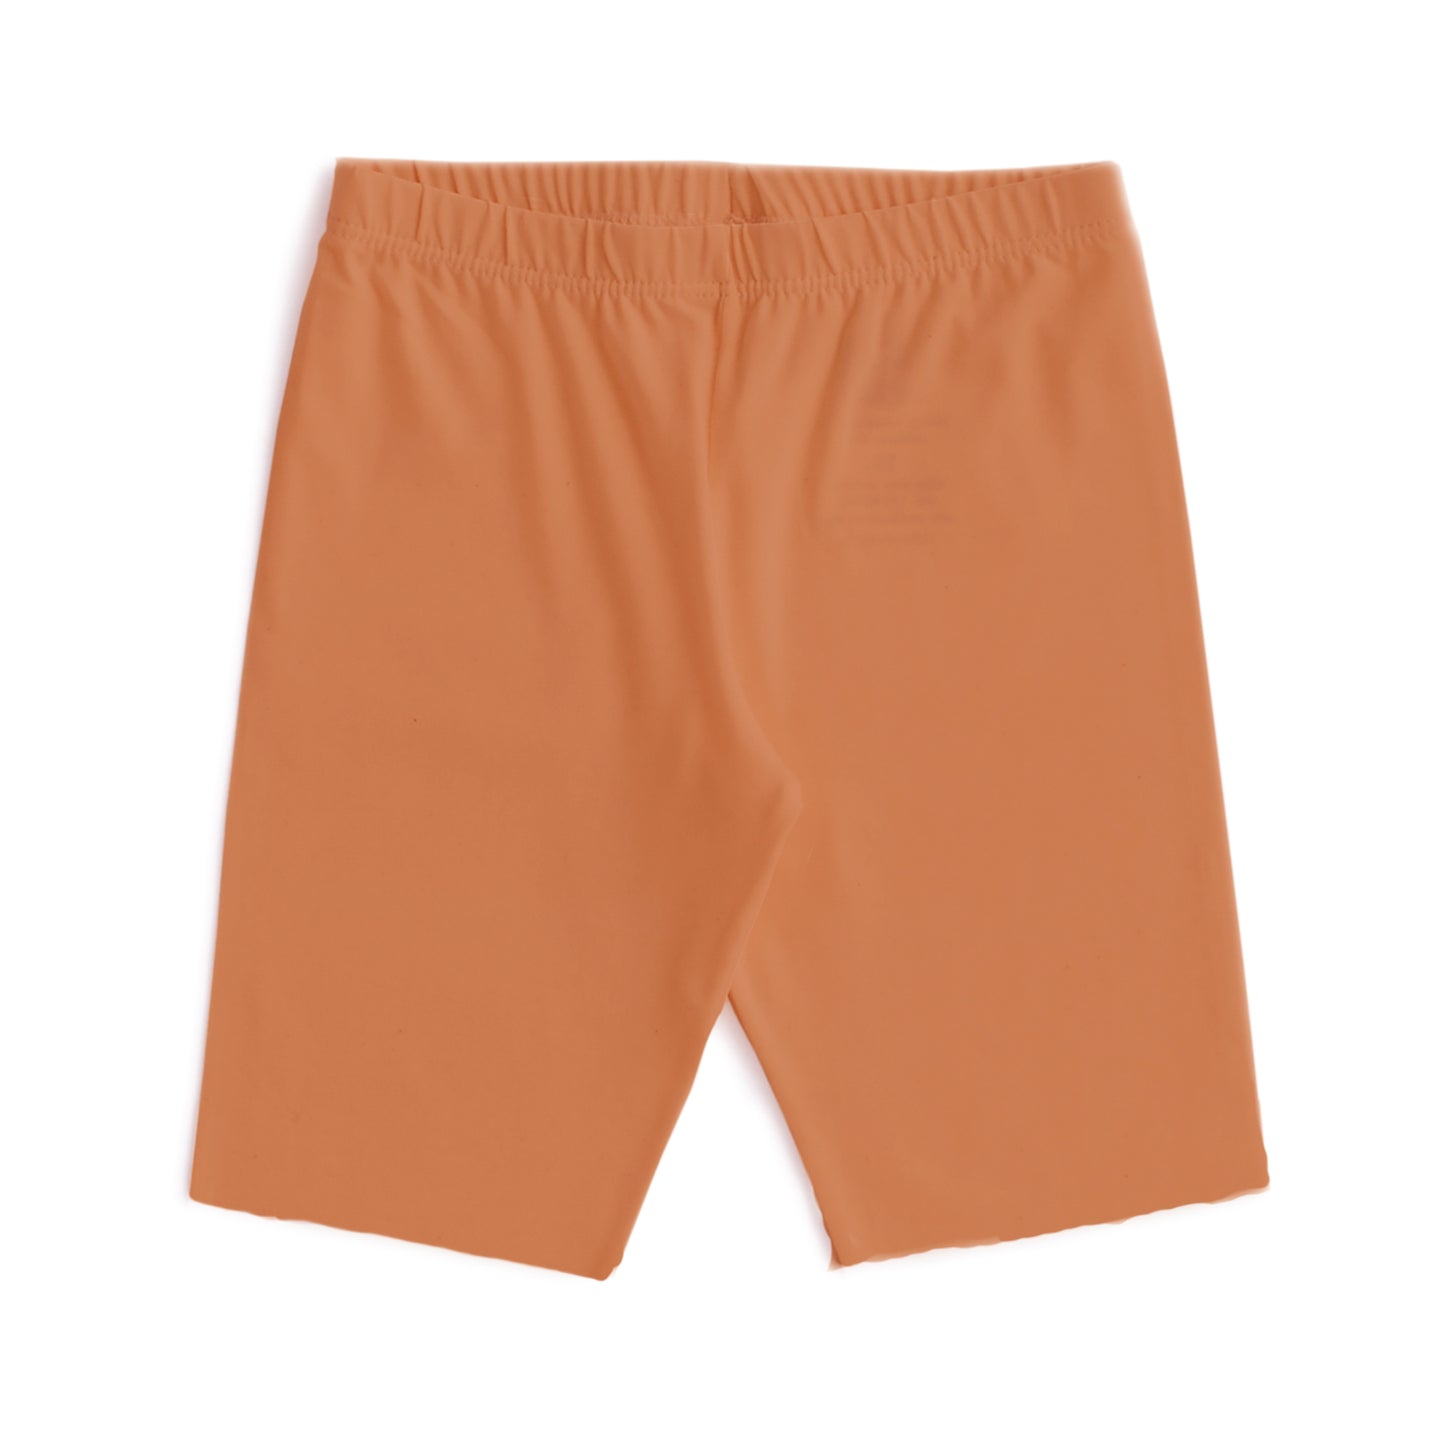 Bike Shorts - Solid Vintage Orange